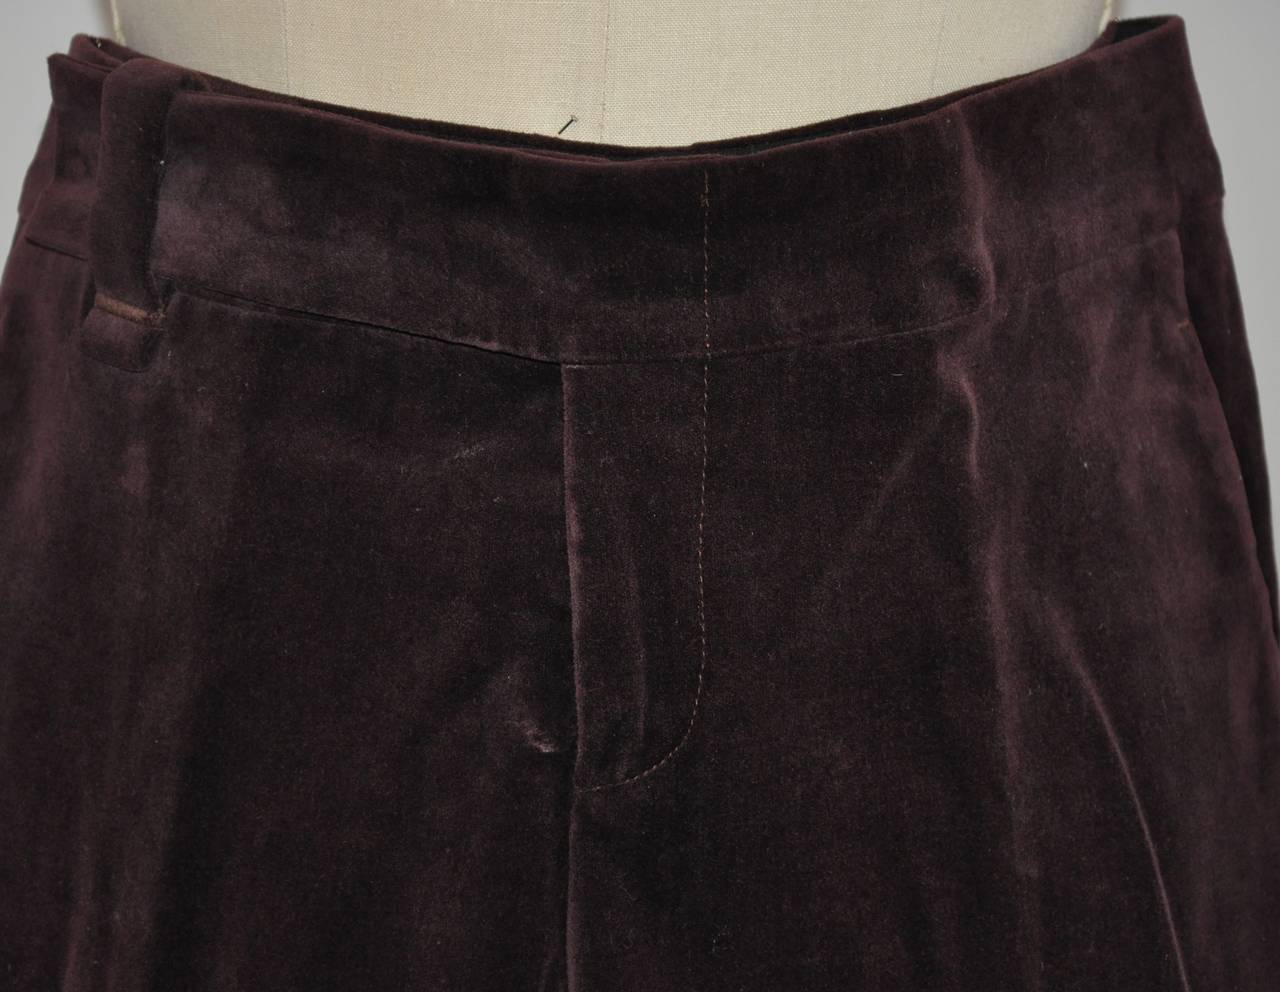 Gucci deep plum cotton brush velour trousers measures 31